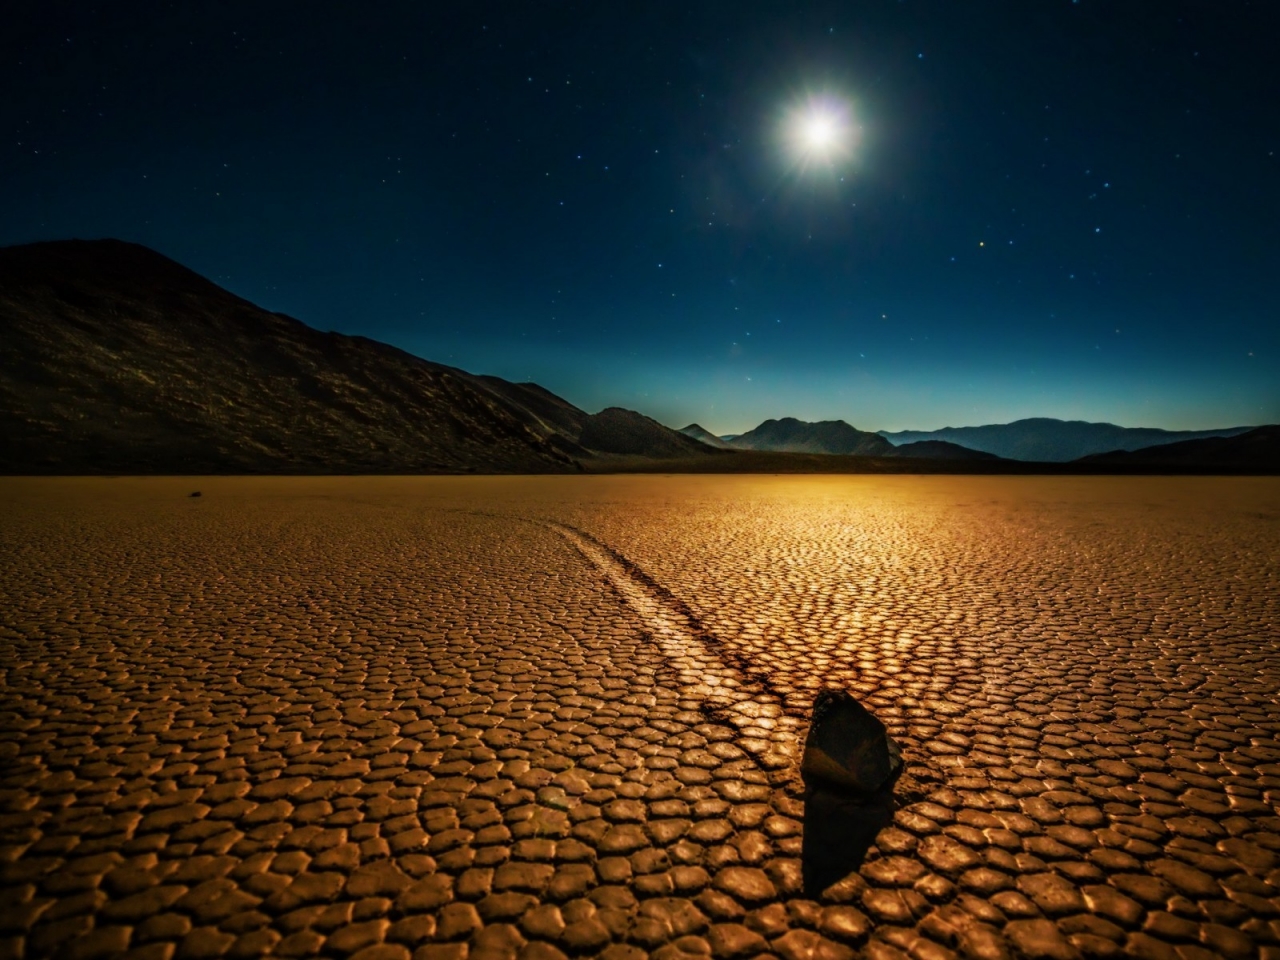 Desert Night Landscape for 1280 x 960 resolution